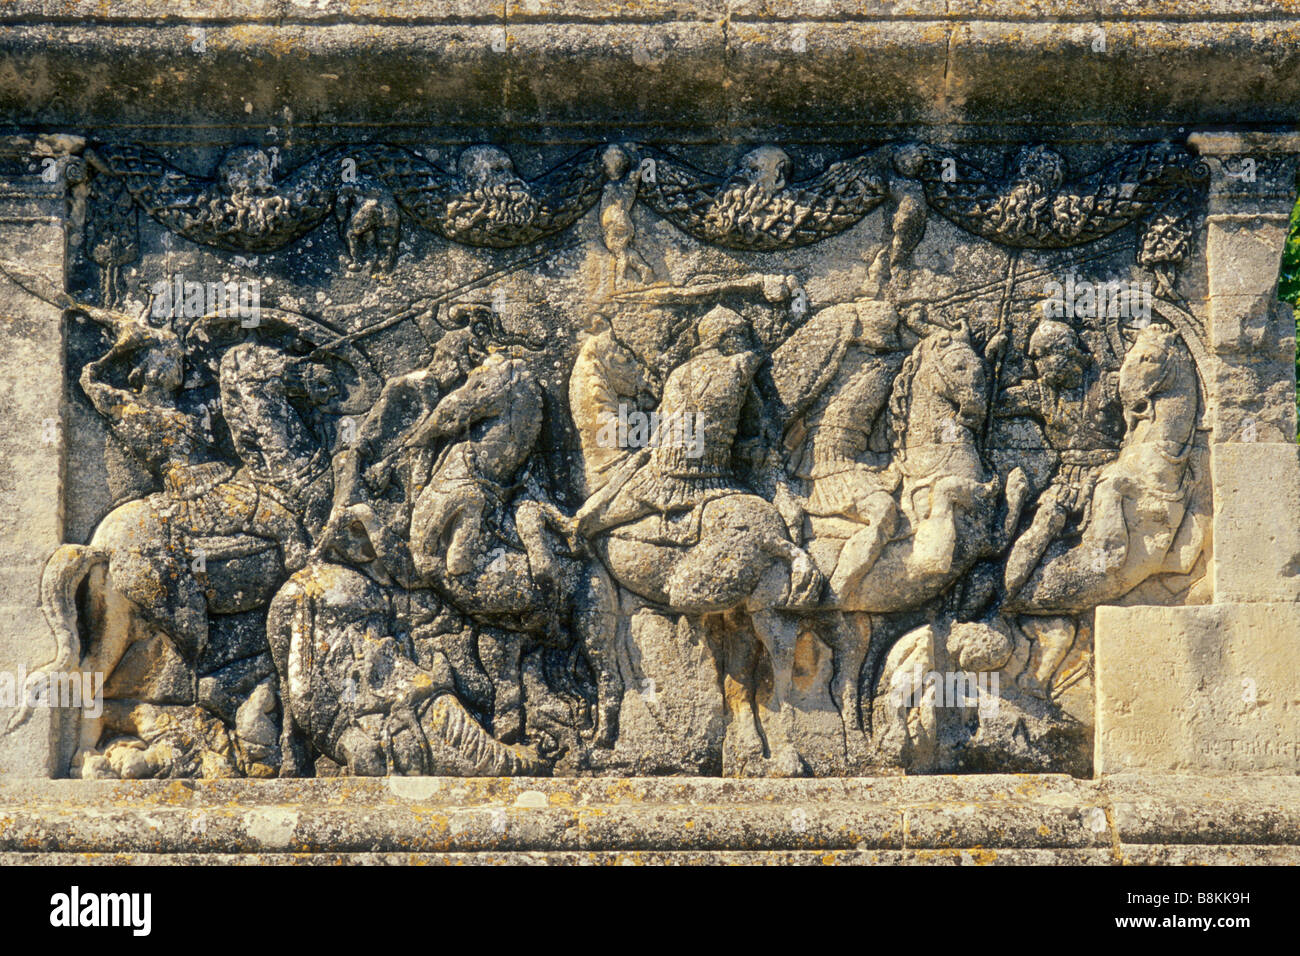 Scène de bataille au secours Mausoleum at les antiques vestiges romains près de St Remy de Provence en Provence France Banque D'Images